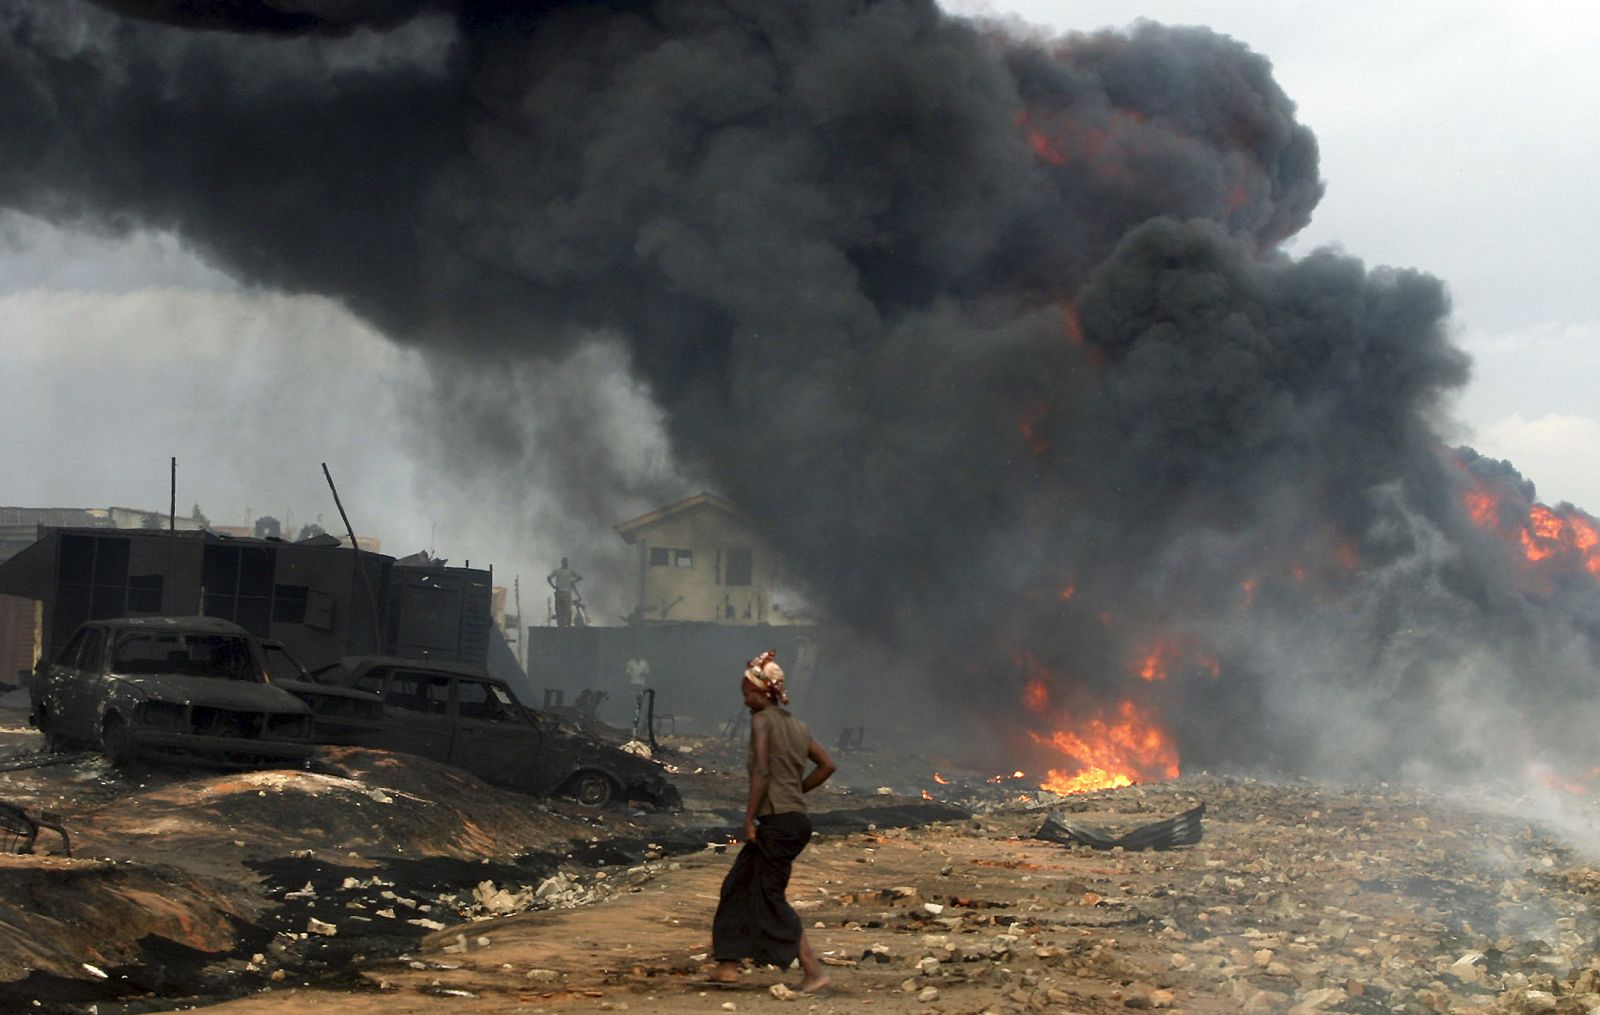 En Lagos, Nigeria, una explosión en una tubería de petróleo ha provocado la muerte de 100 personas.